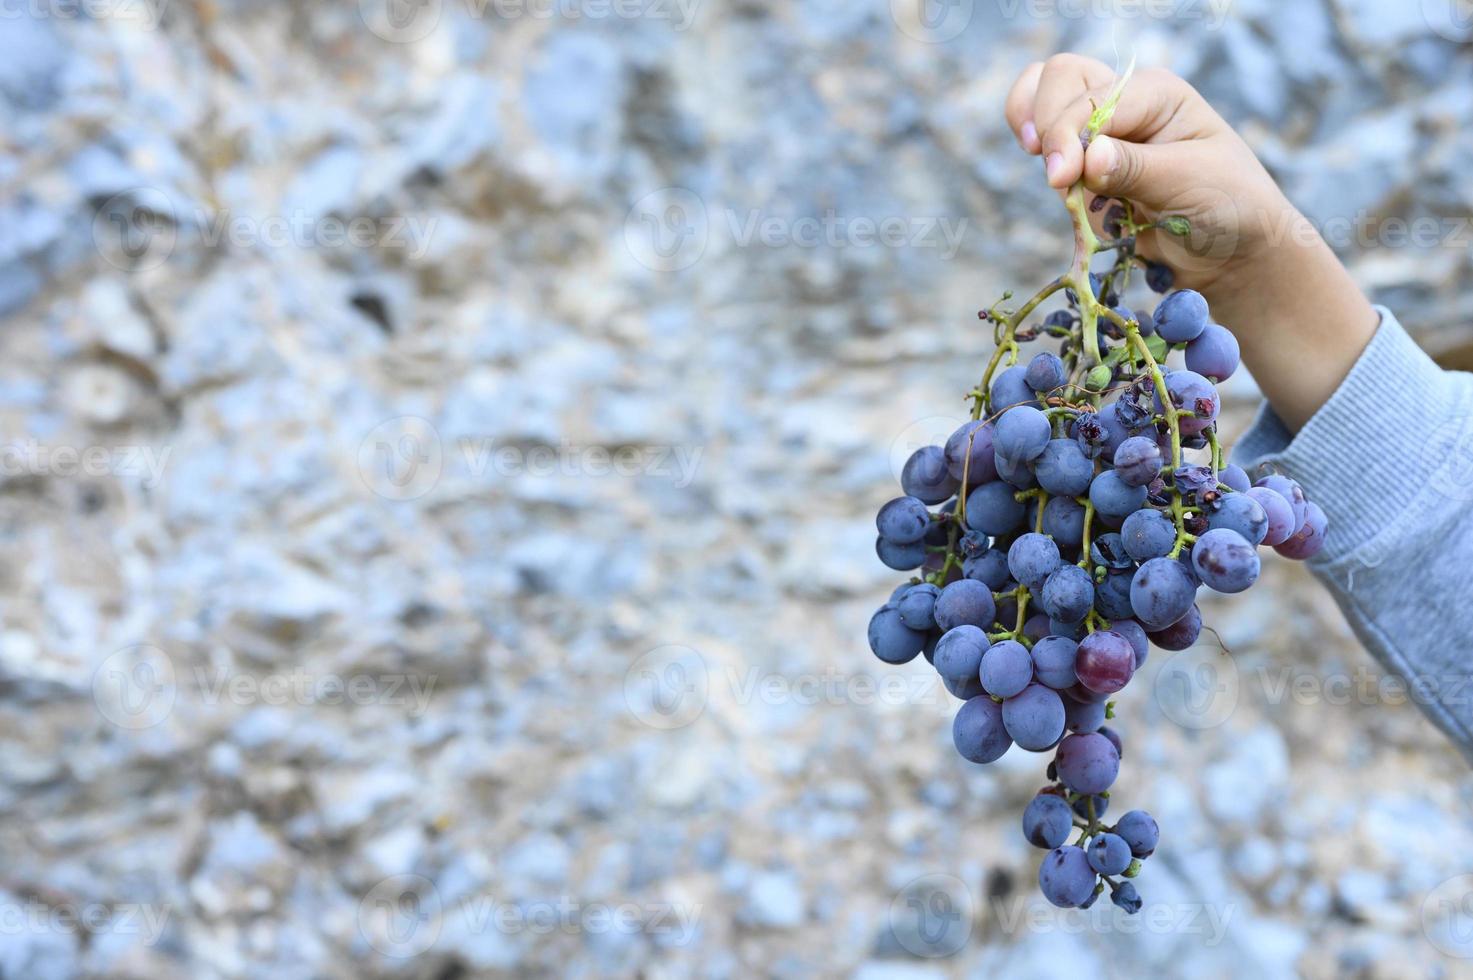 La main d'un enfant tient une grappe de raisins crétois noirs sauvages mûrs contre une falaise de pierre photo